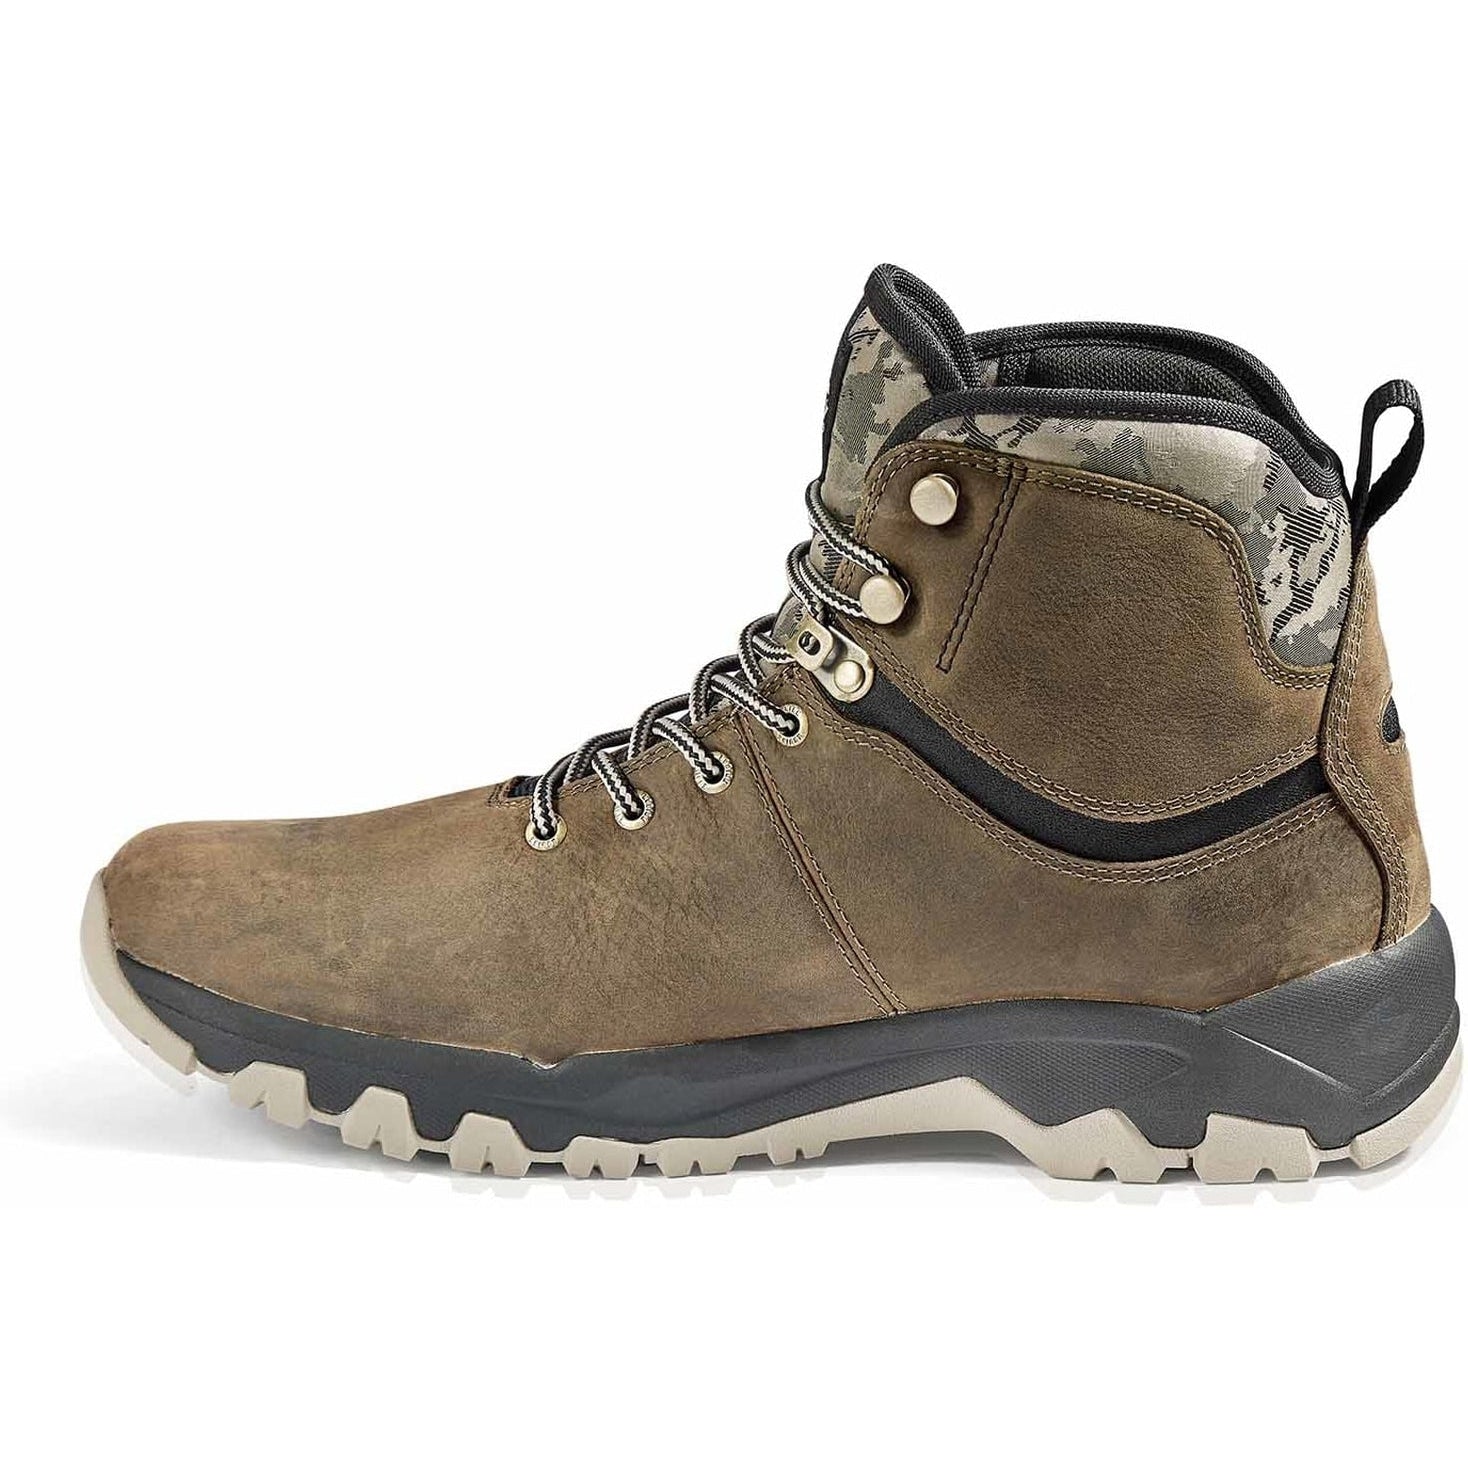 Kodiak Men's Comox Soft Toe Waterproof Lace Up Outdoor Boot -Fossil- 4TE2FS  - Overlook Boots